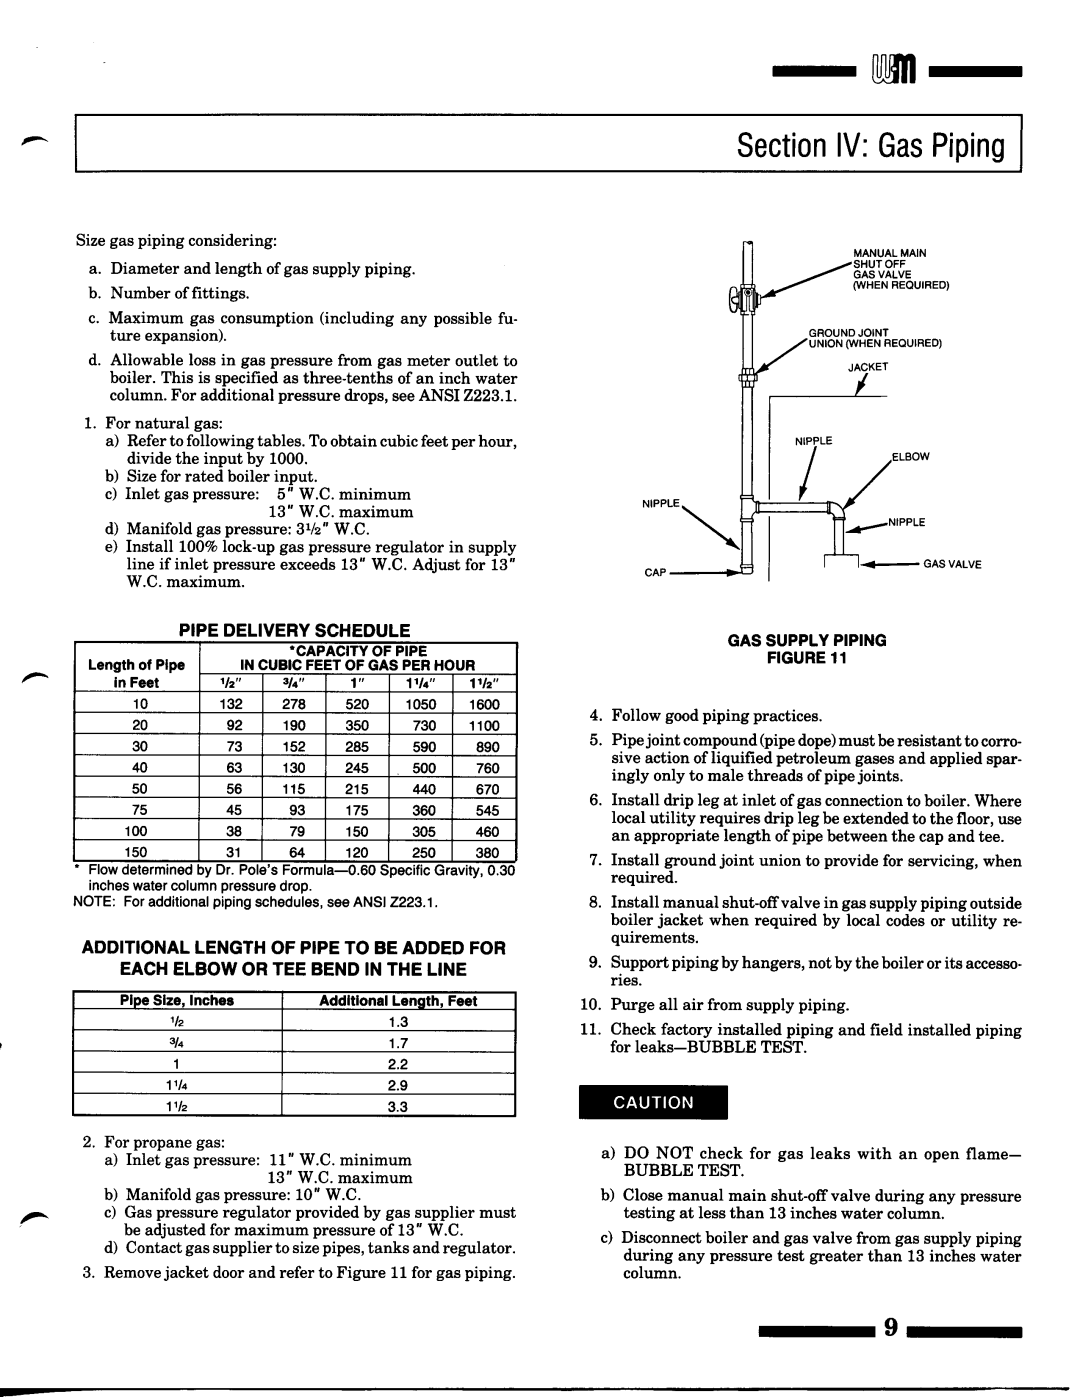 Weil-McLain CGM (Series 9), P-CG (Series 9) manual 